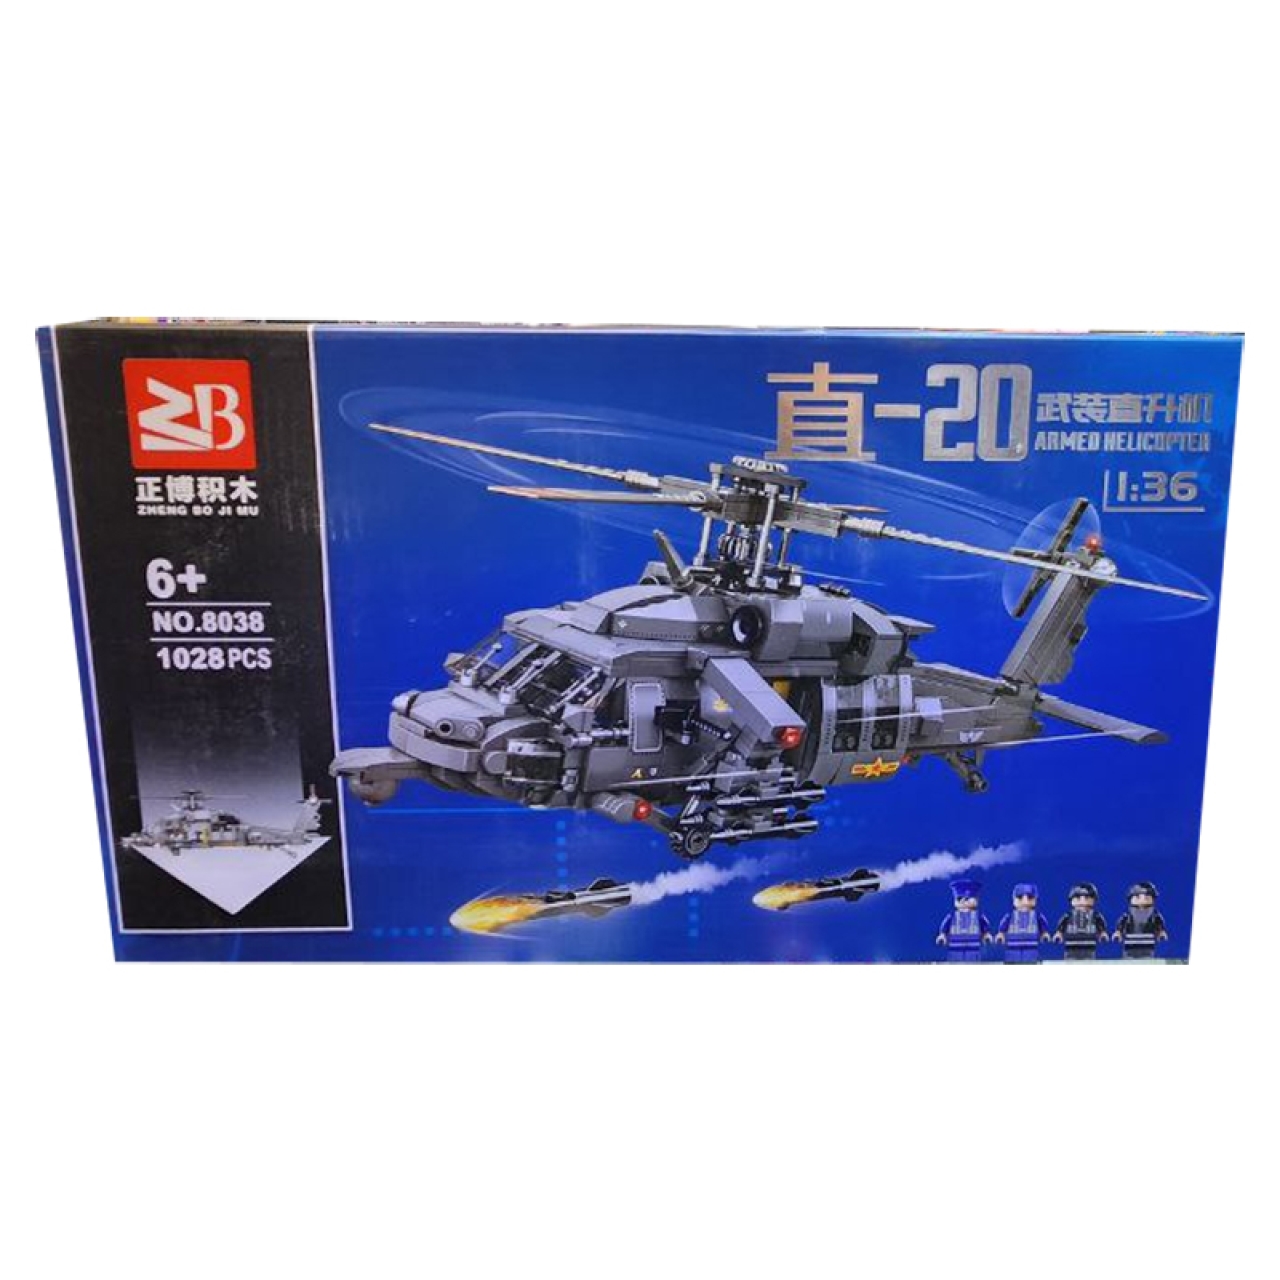 ساختنی  زد بی مدل Armed Helicopter کد 8038